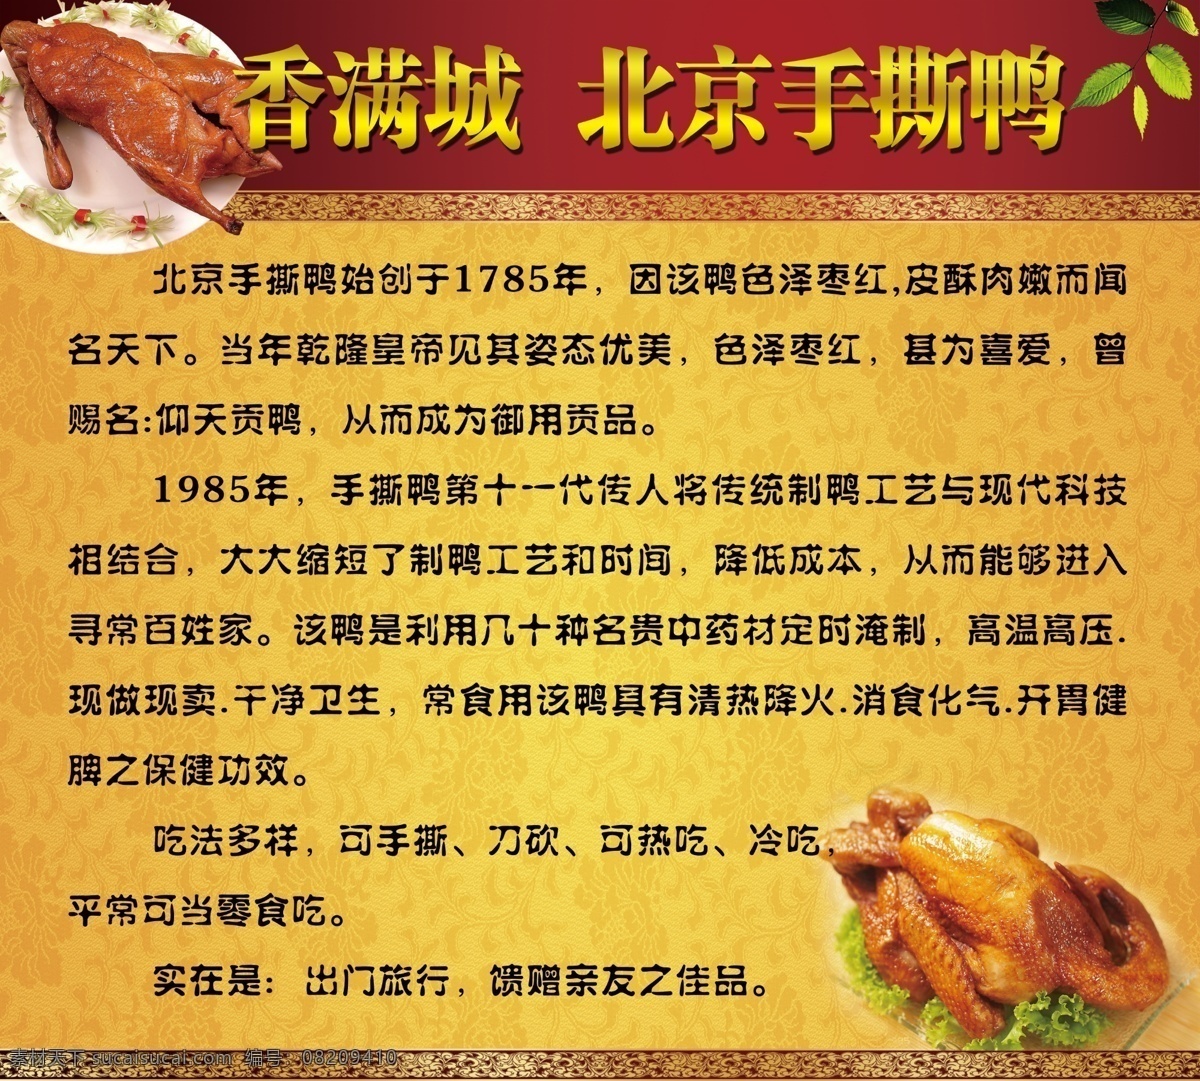 北京手撕鸭 手撕鸭简介 香满城 烤鸭 鸭子 娱乐餐饮